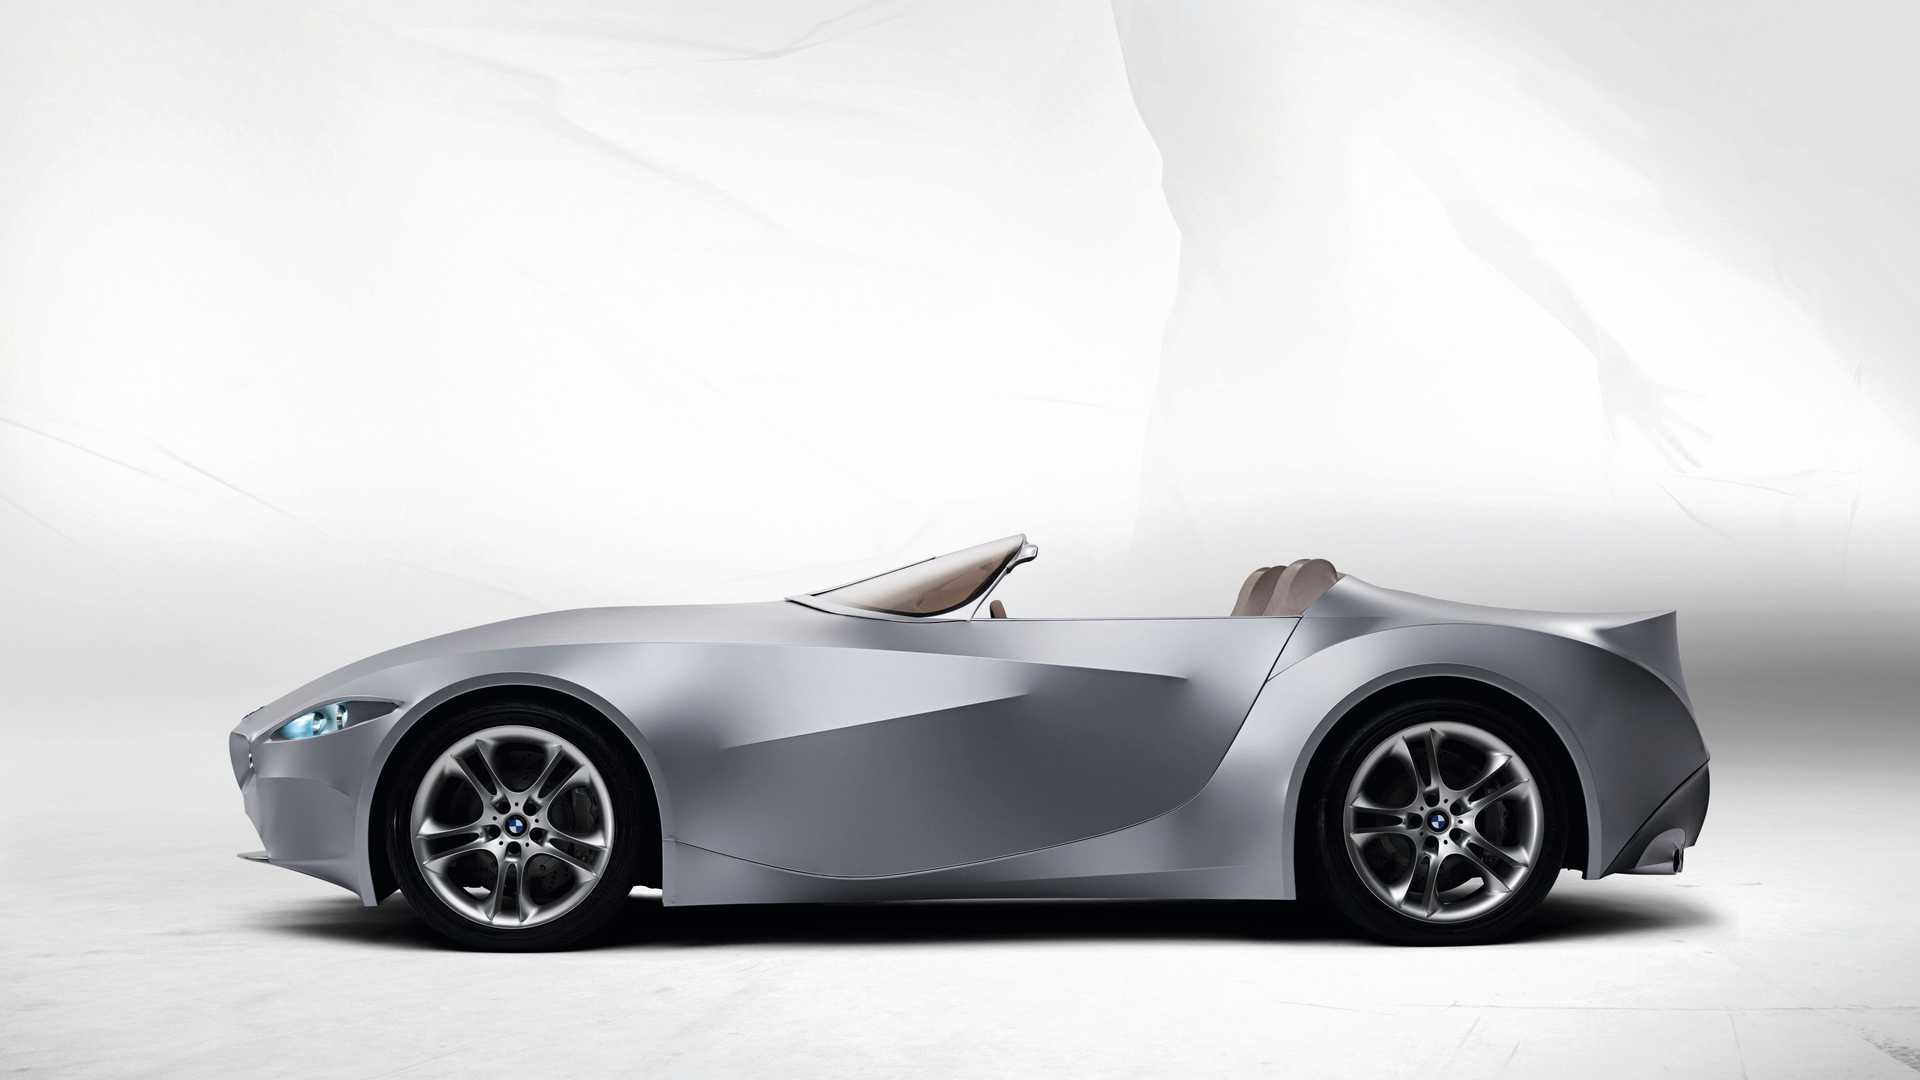 نمای جانبی خودروی مفهومی روباز بی ام و گینا / BMW GINA concept convertible